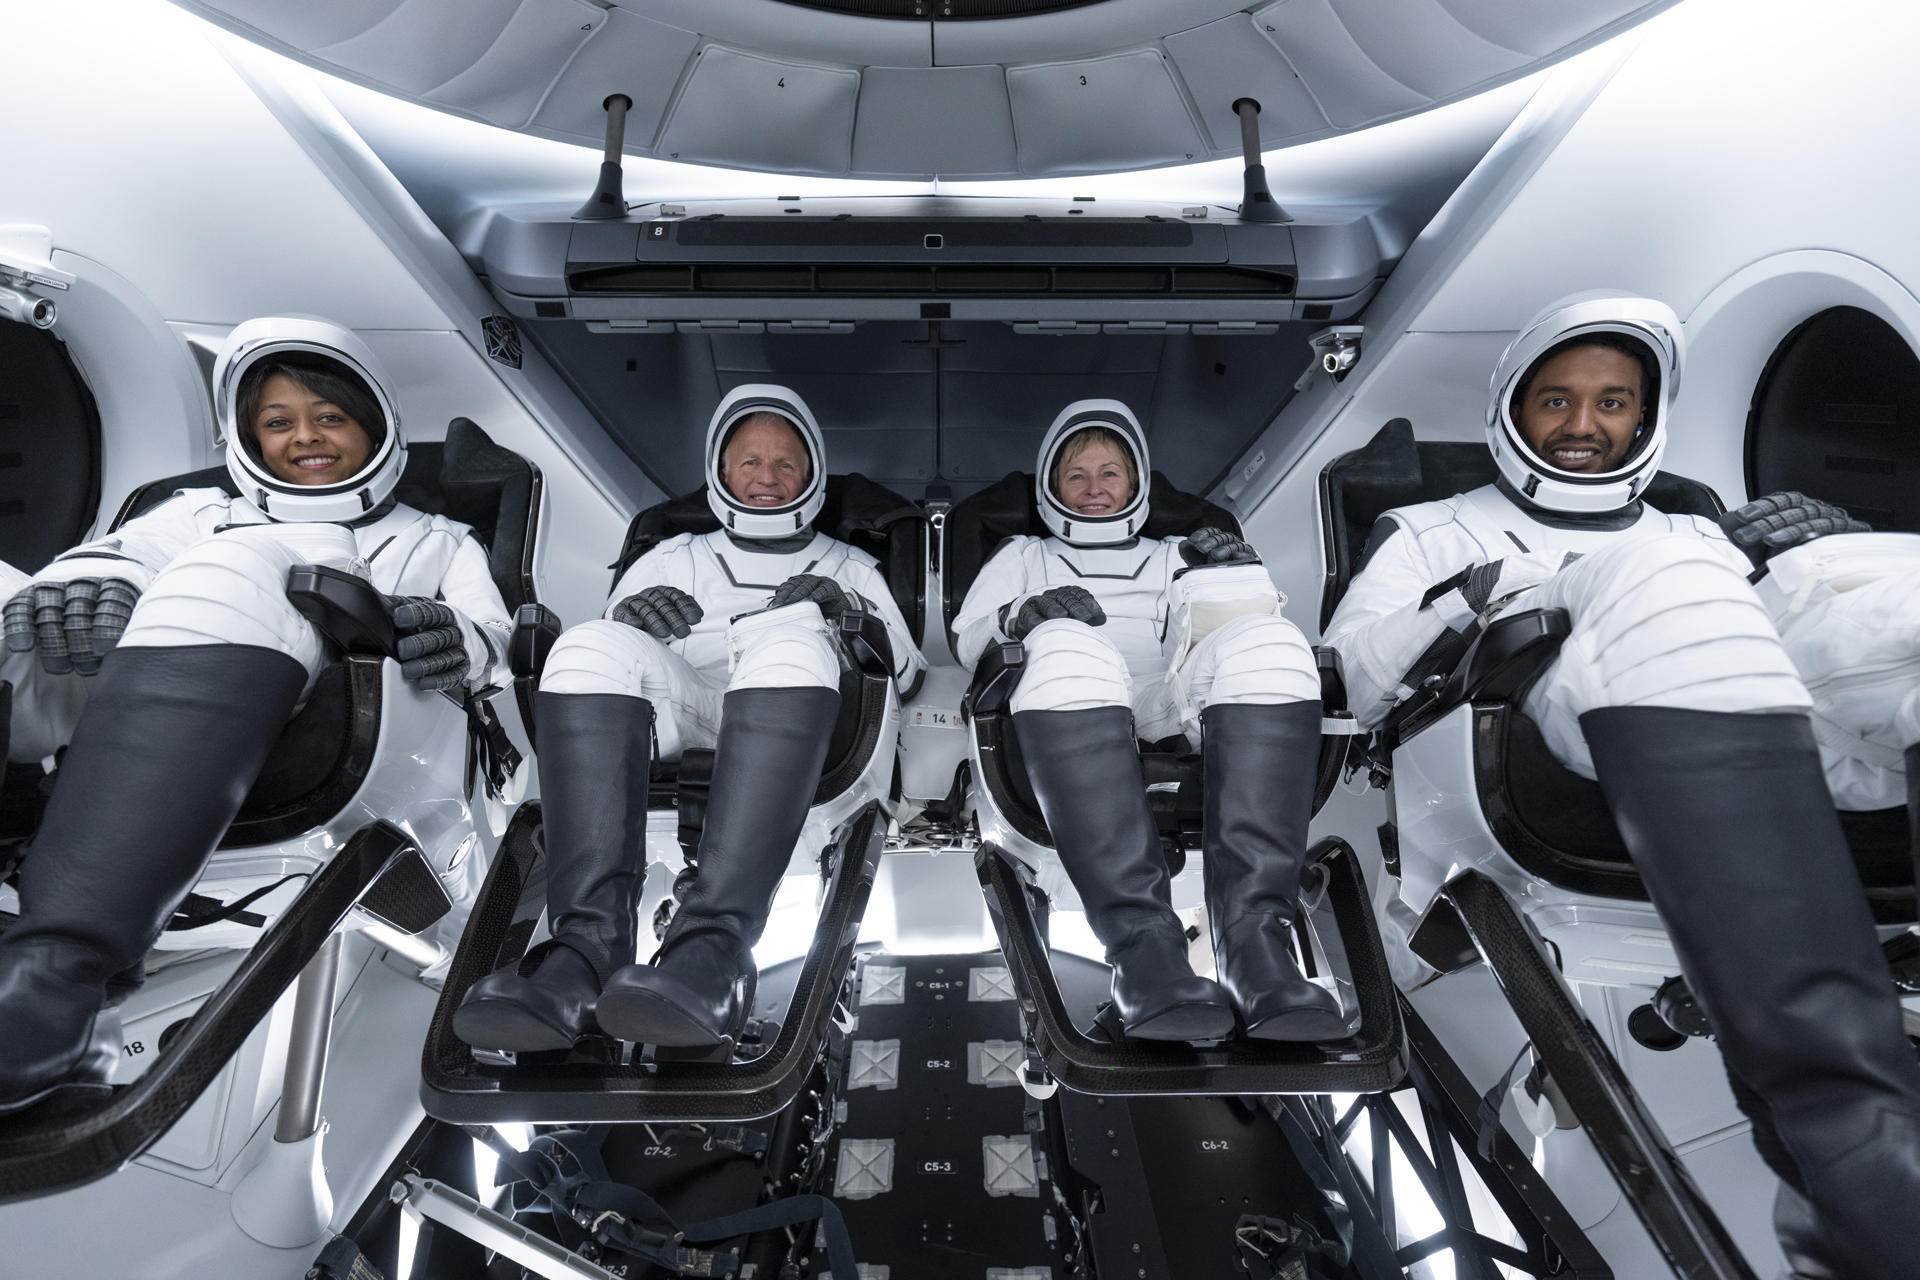 Fotografía del 19 de mayo cedida por Axiom Space donde aparecen los cuatro astronautas de la misión tripulada Ax-2, la comandante Peggy Whitson (2d), el piloto John Shoffner (2i), y los especialistas de la misión Rayyanah Barnawi (i), y Ali Alqarni (d), dentro de la nave de tripulación SpaceX Dragon Freedom en Cabo Cañaveral, Florida (EE.UU.). EFE/Axiom Space